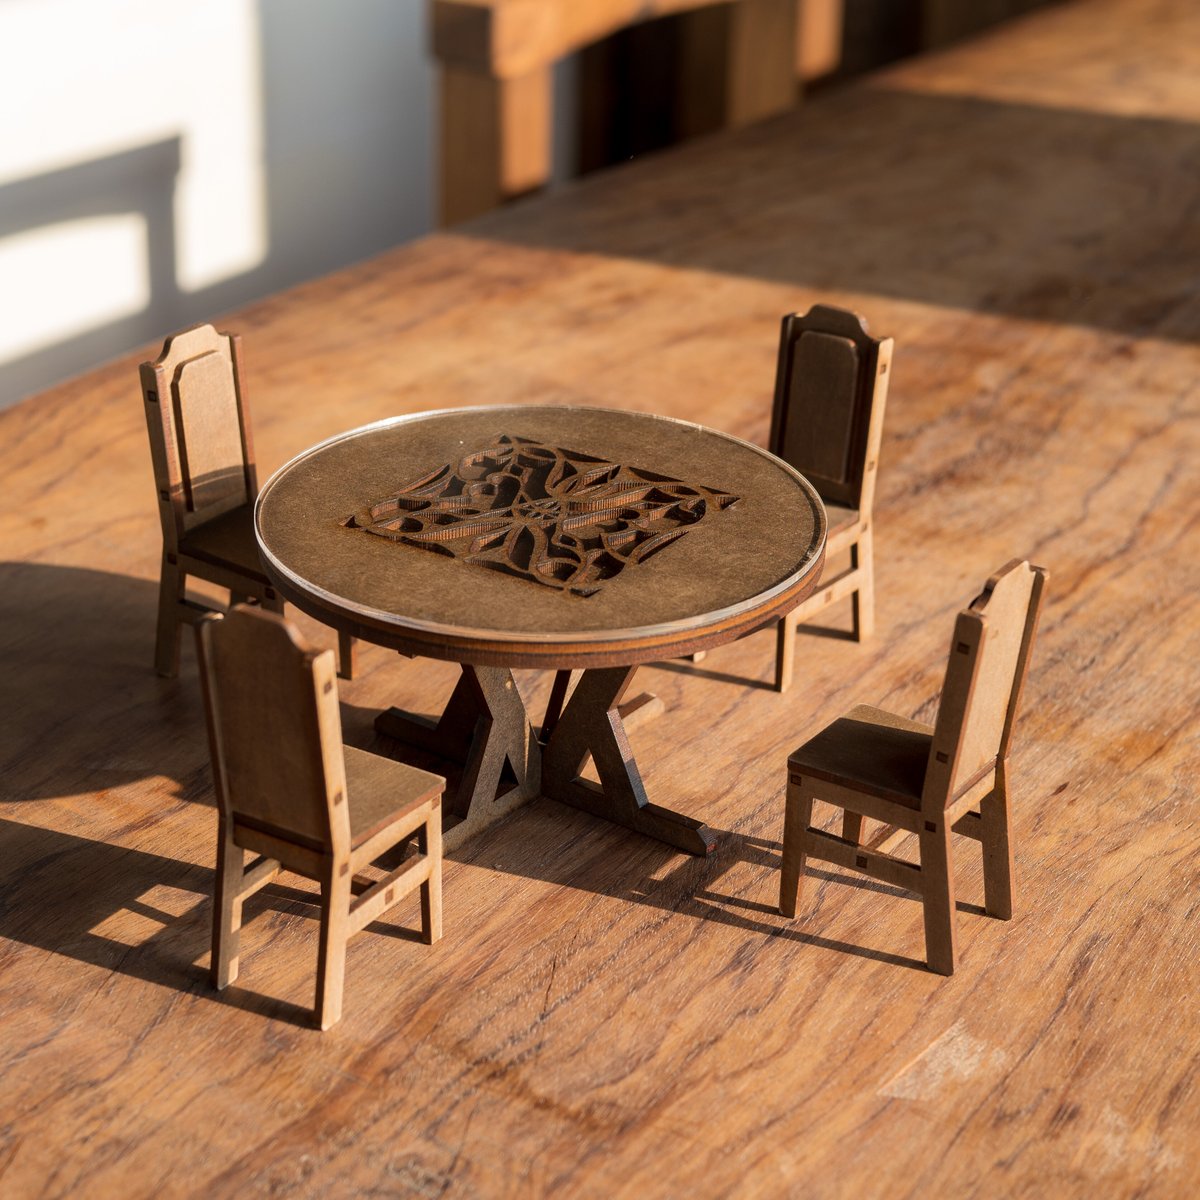 1/10スケールミニチュア家具大きめ丸テーブルと椅子セット | kkcompany